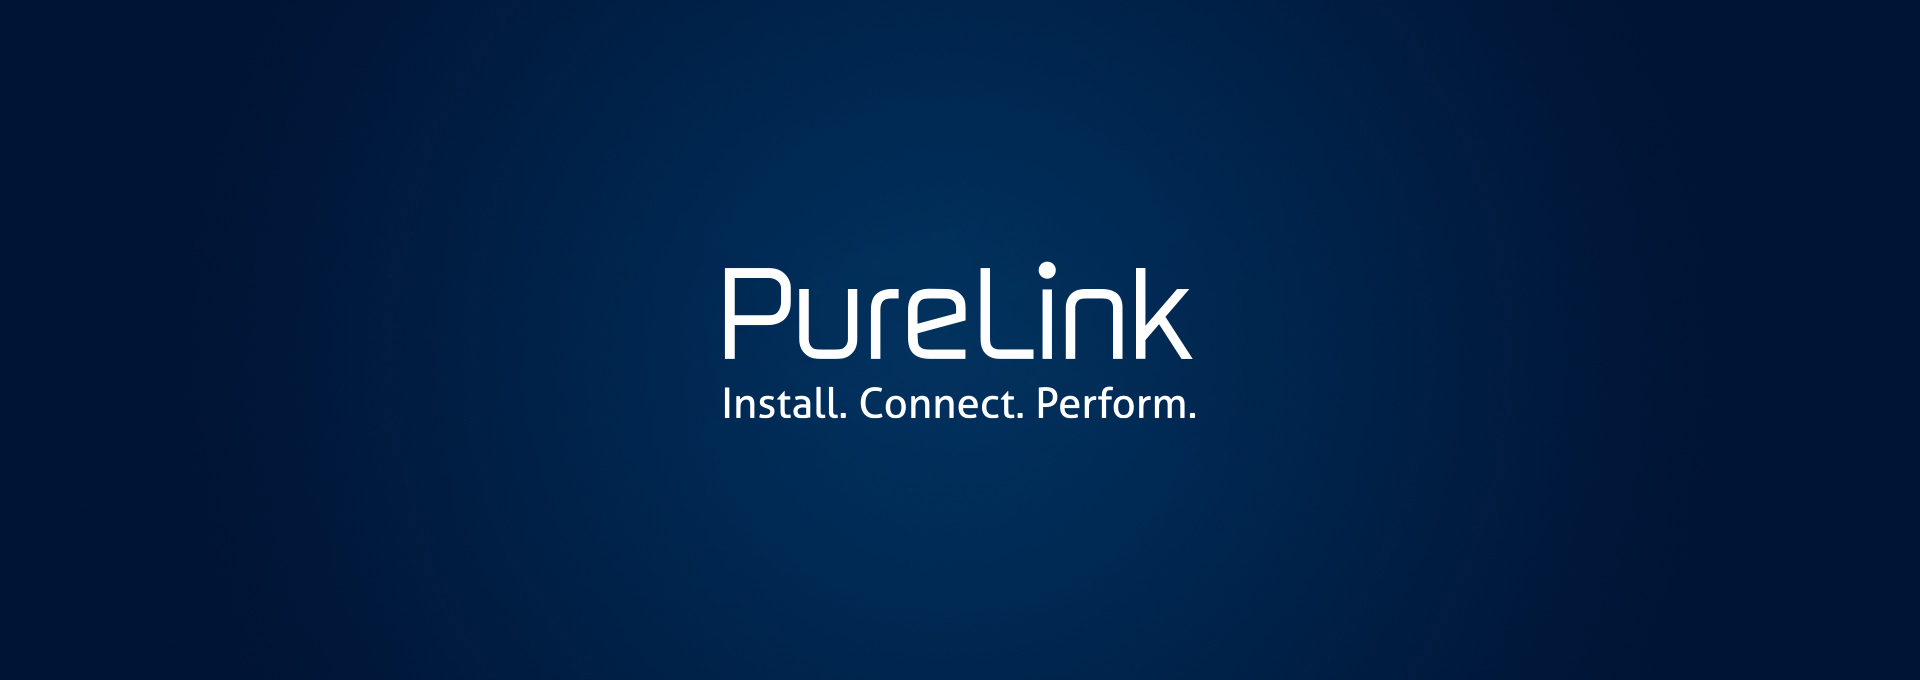 blauer Headerbanner mit weißem PureLink Logo